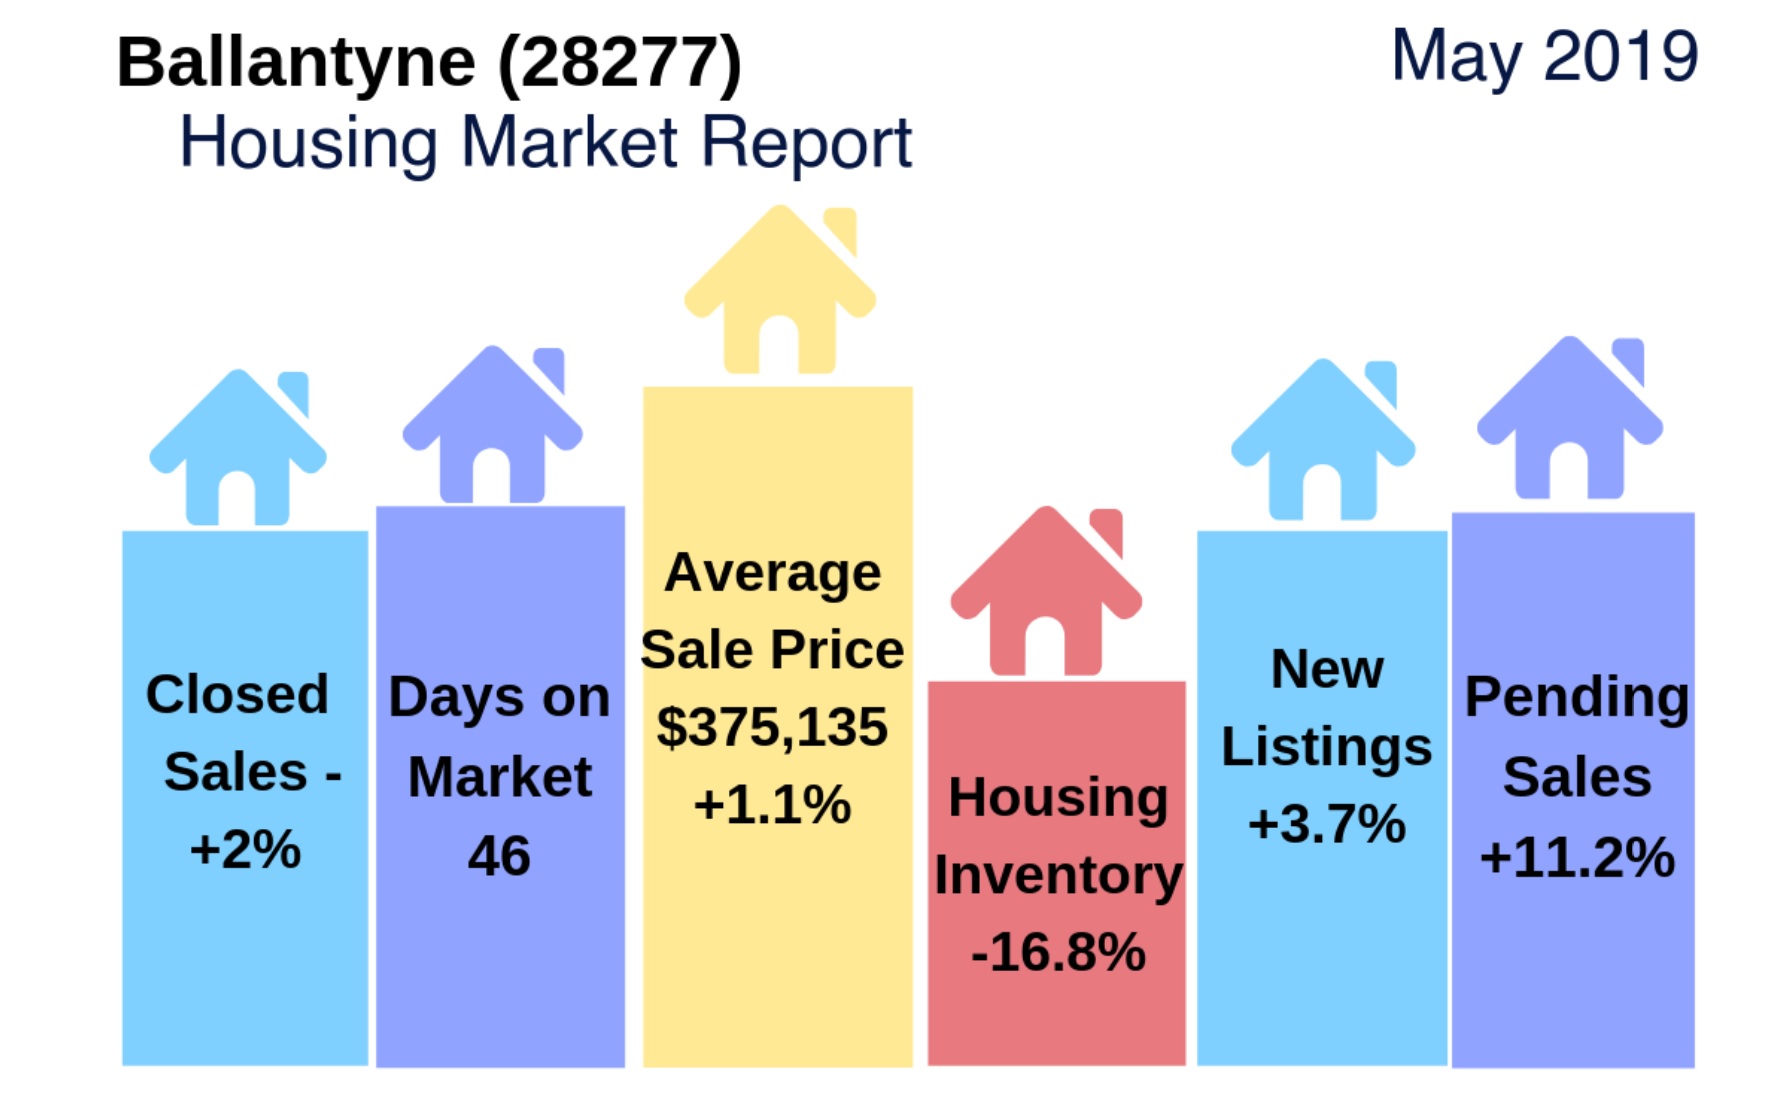 Ballantyne (28277 Zip Code) Housing Market Update & Video: May 2019